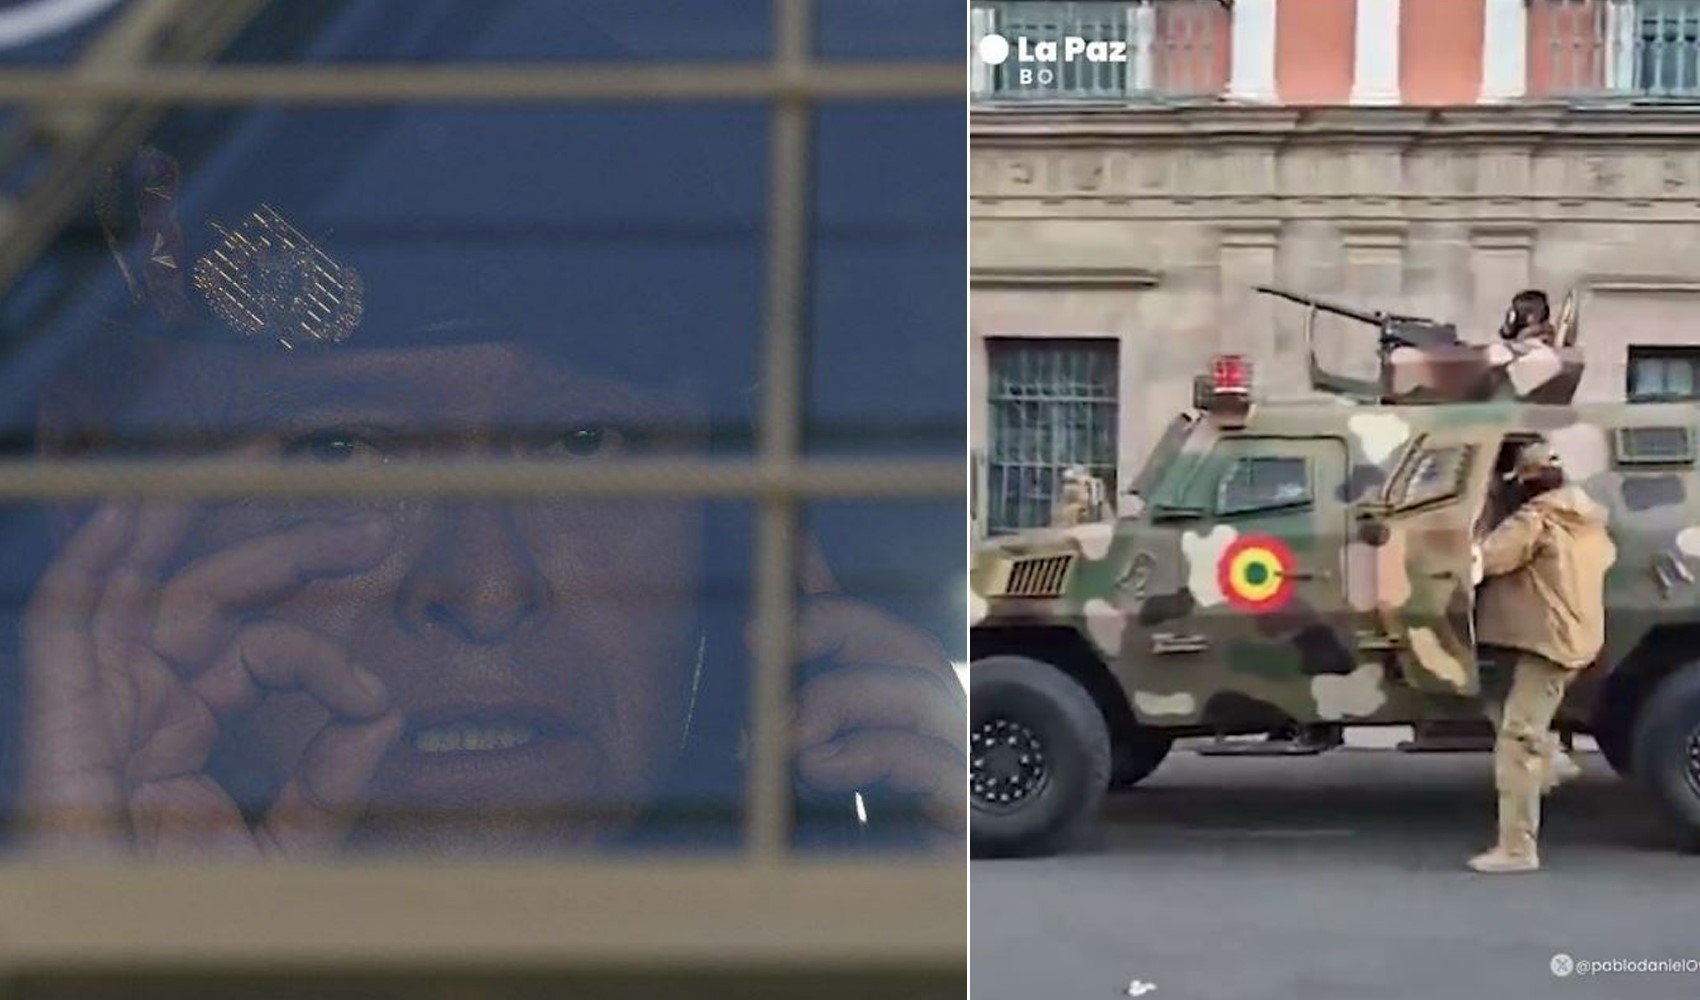 Bolivya'da darbe girişimi bastırıldı: Darbeci general Zuniga gözaltına alındı